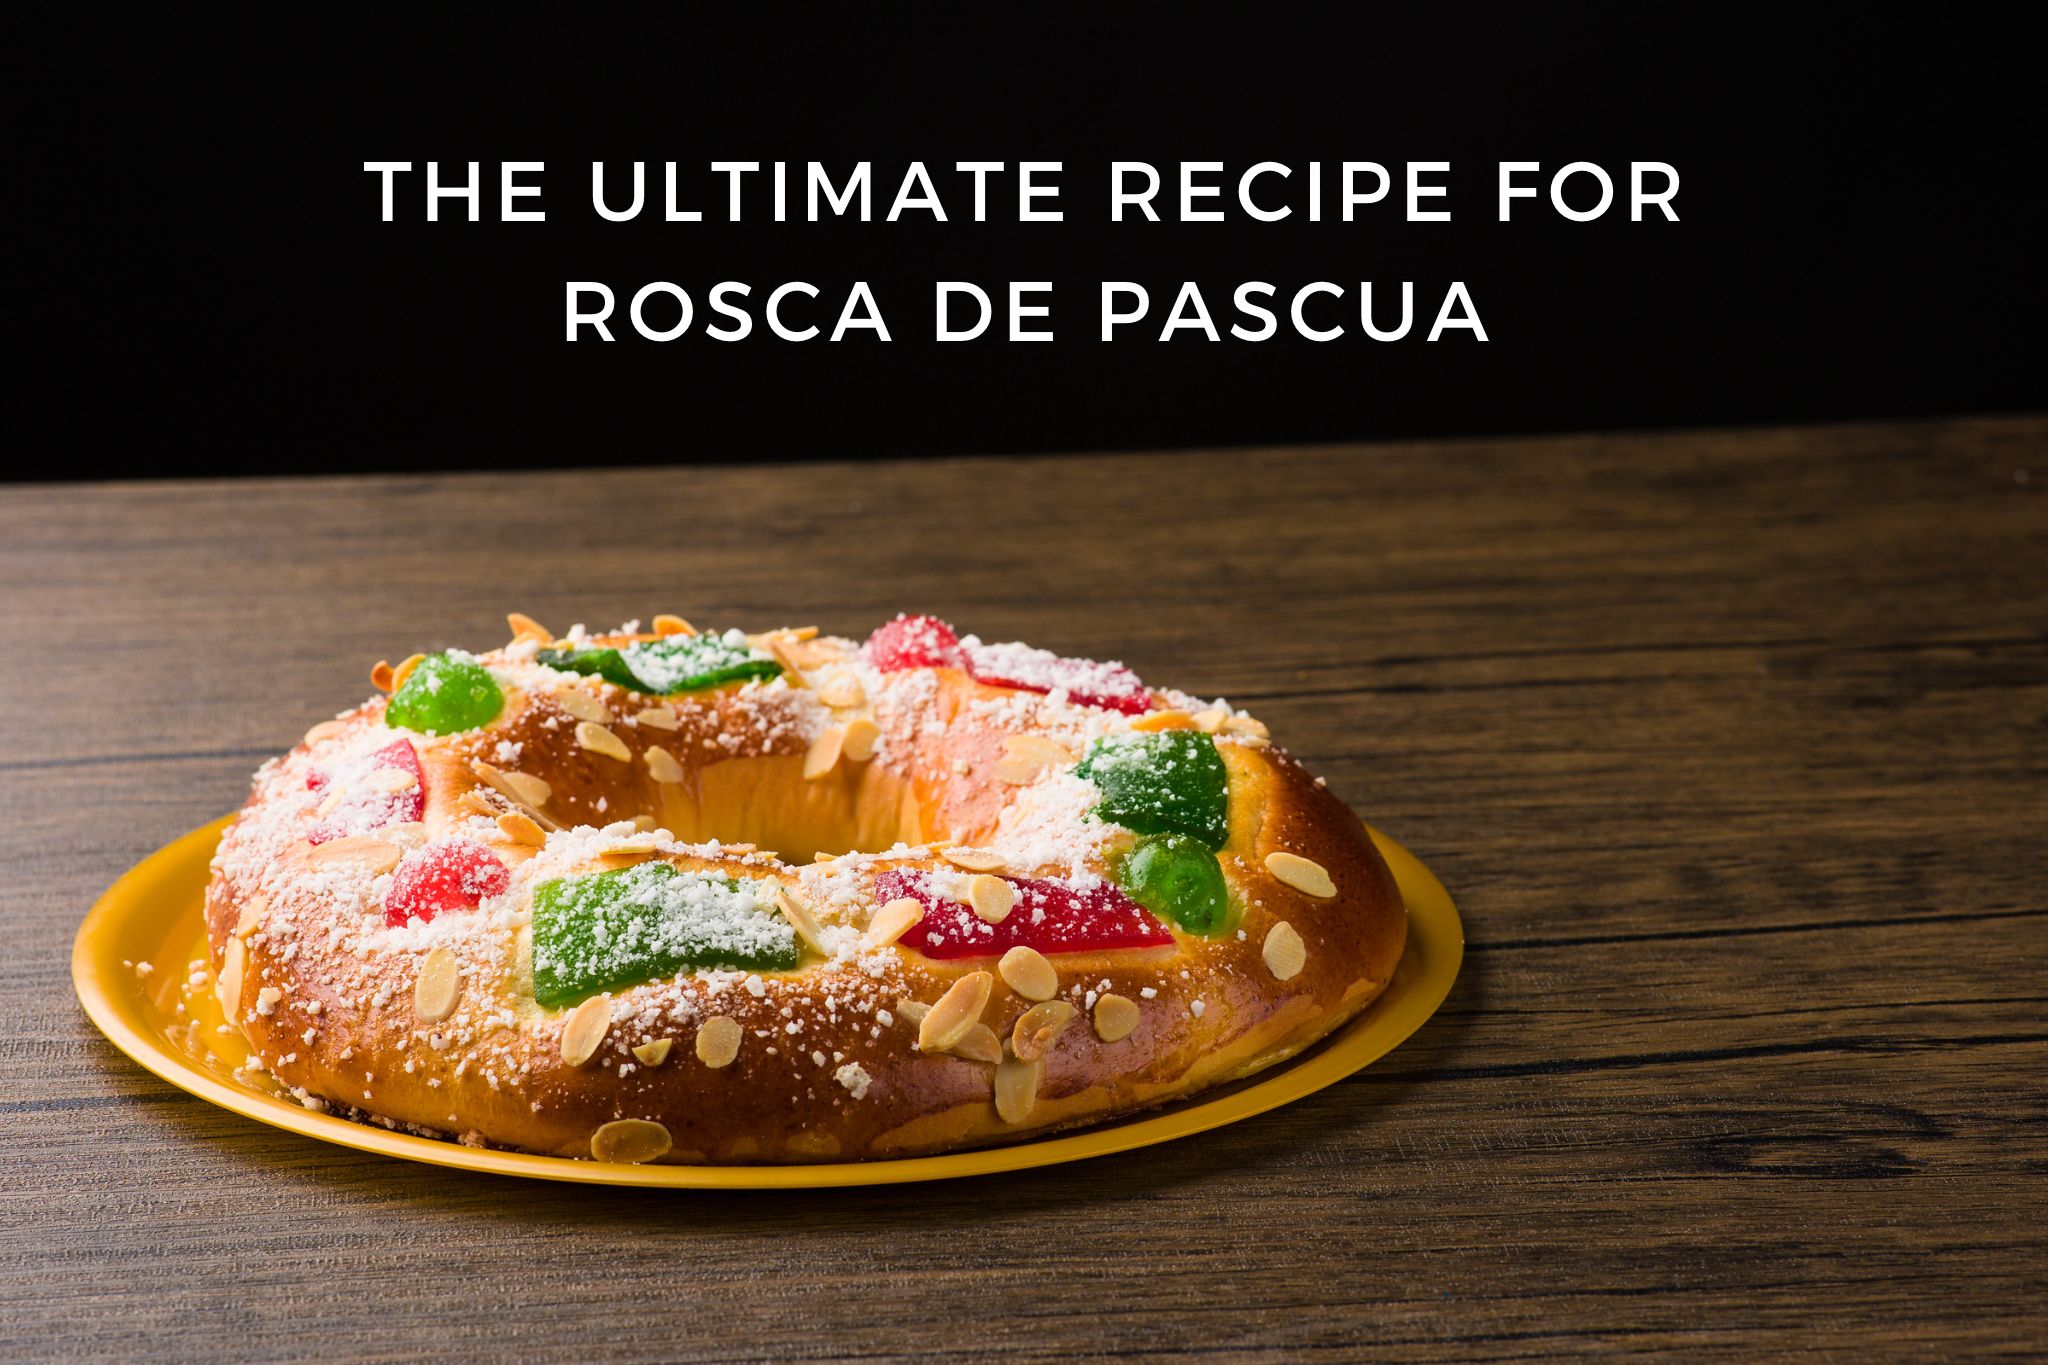 Recipe for rosca de pascua in Argentina